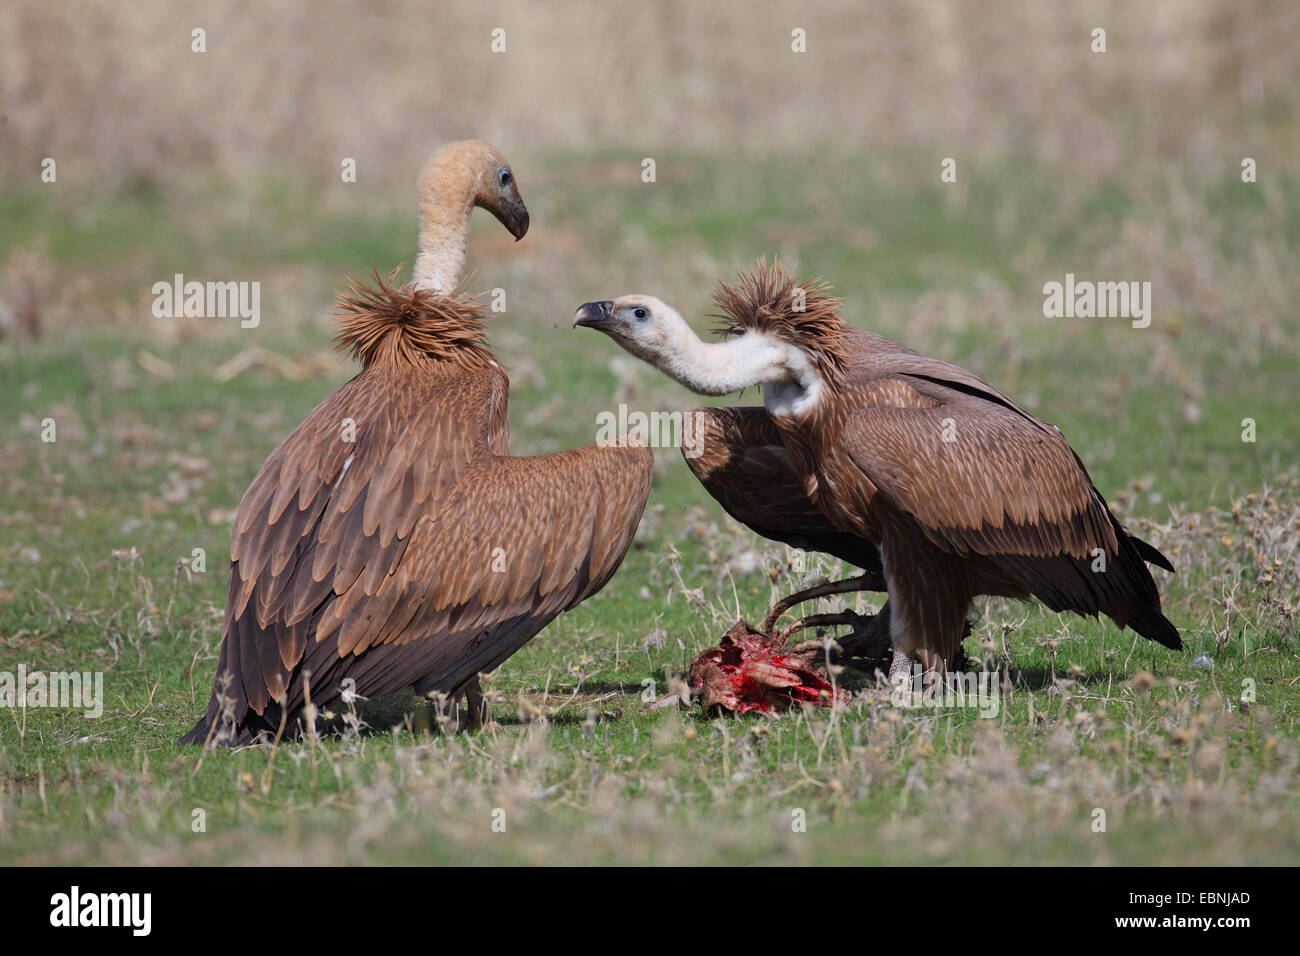 Grifone (Gyps fulvus), due avvoltoi immaturi che lottano per il cibo, Spagna Estremadura Foto Stock